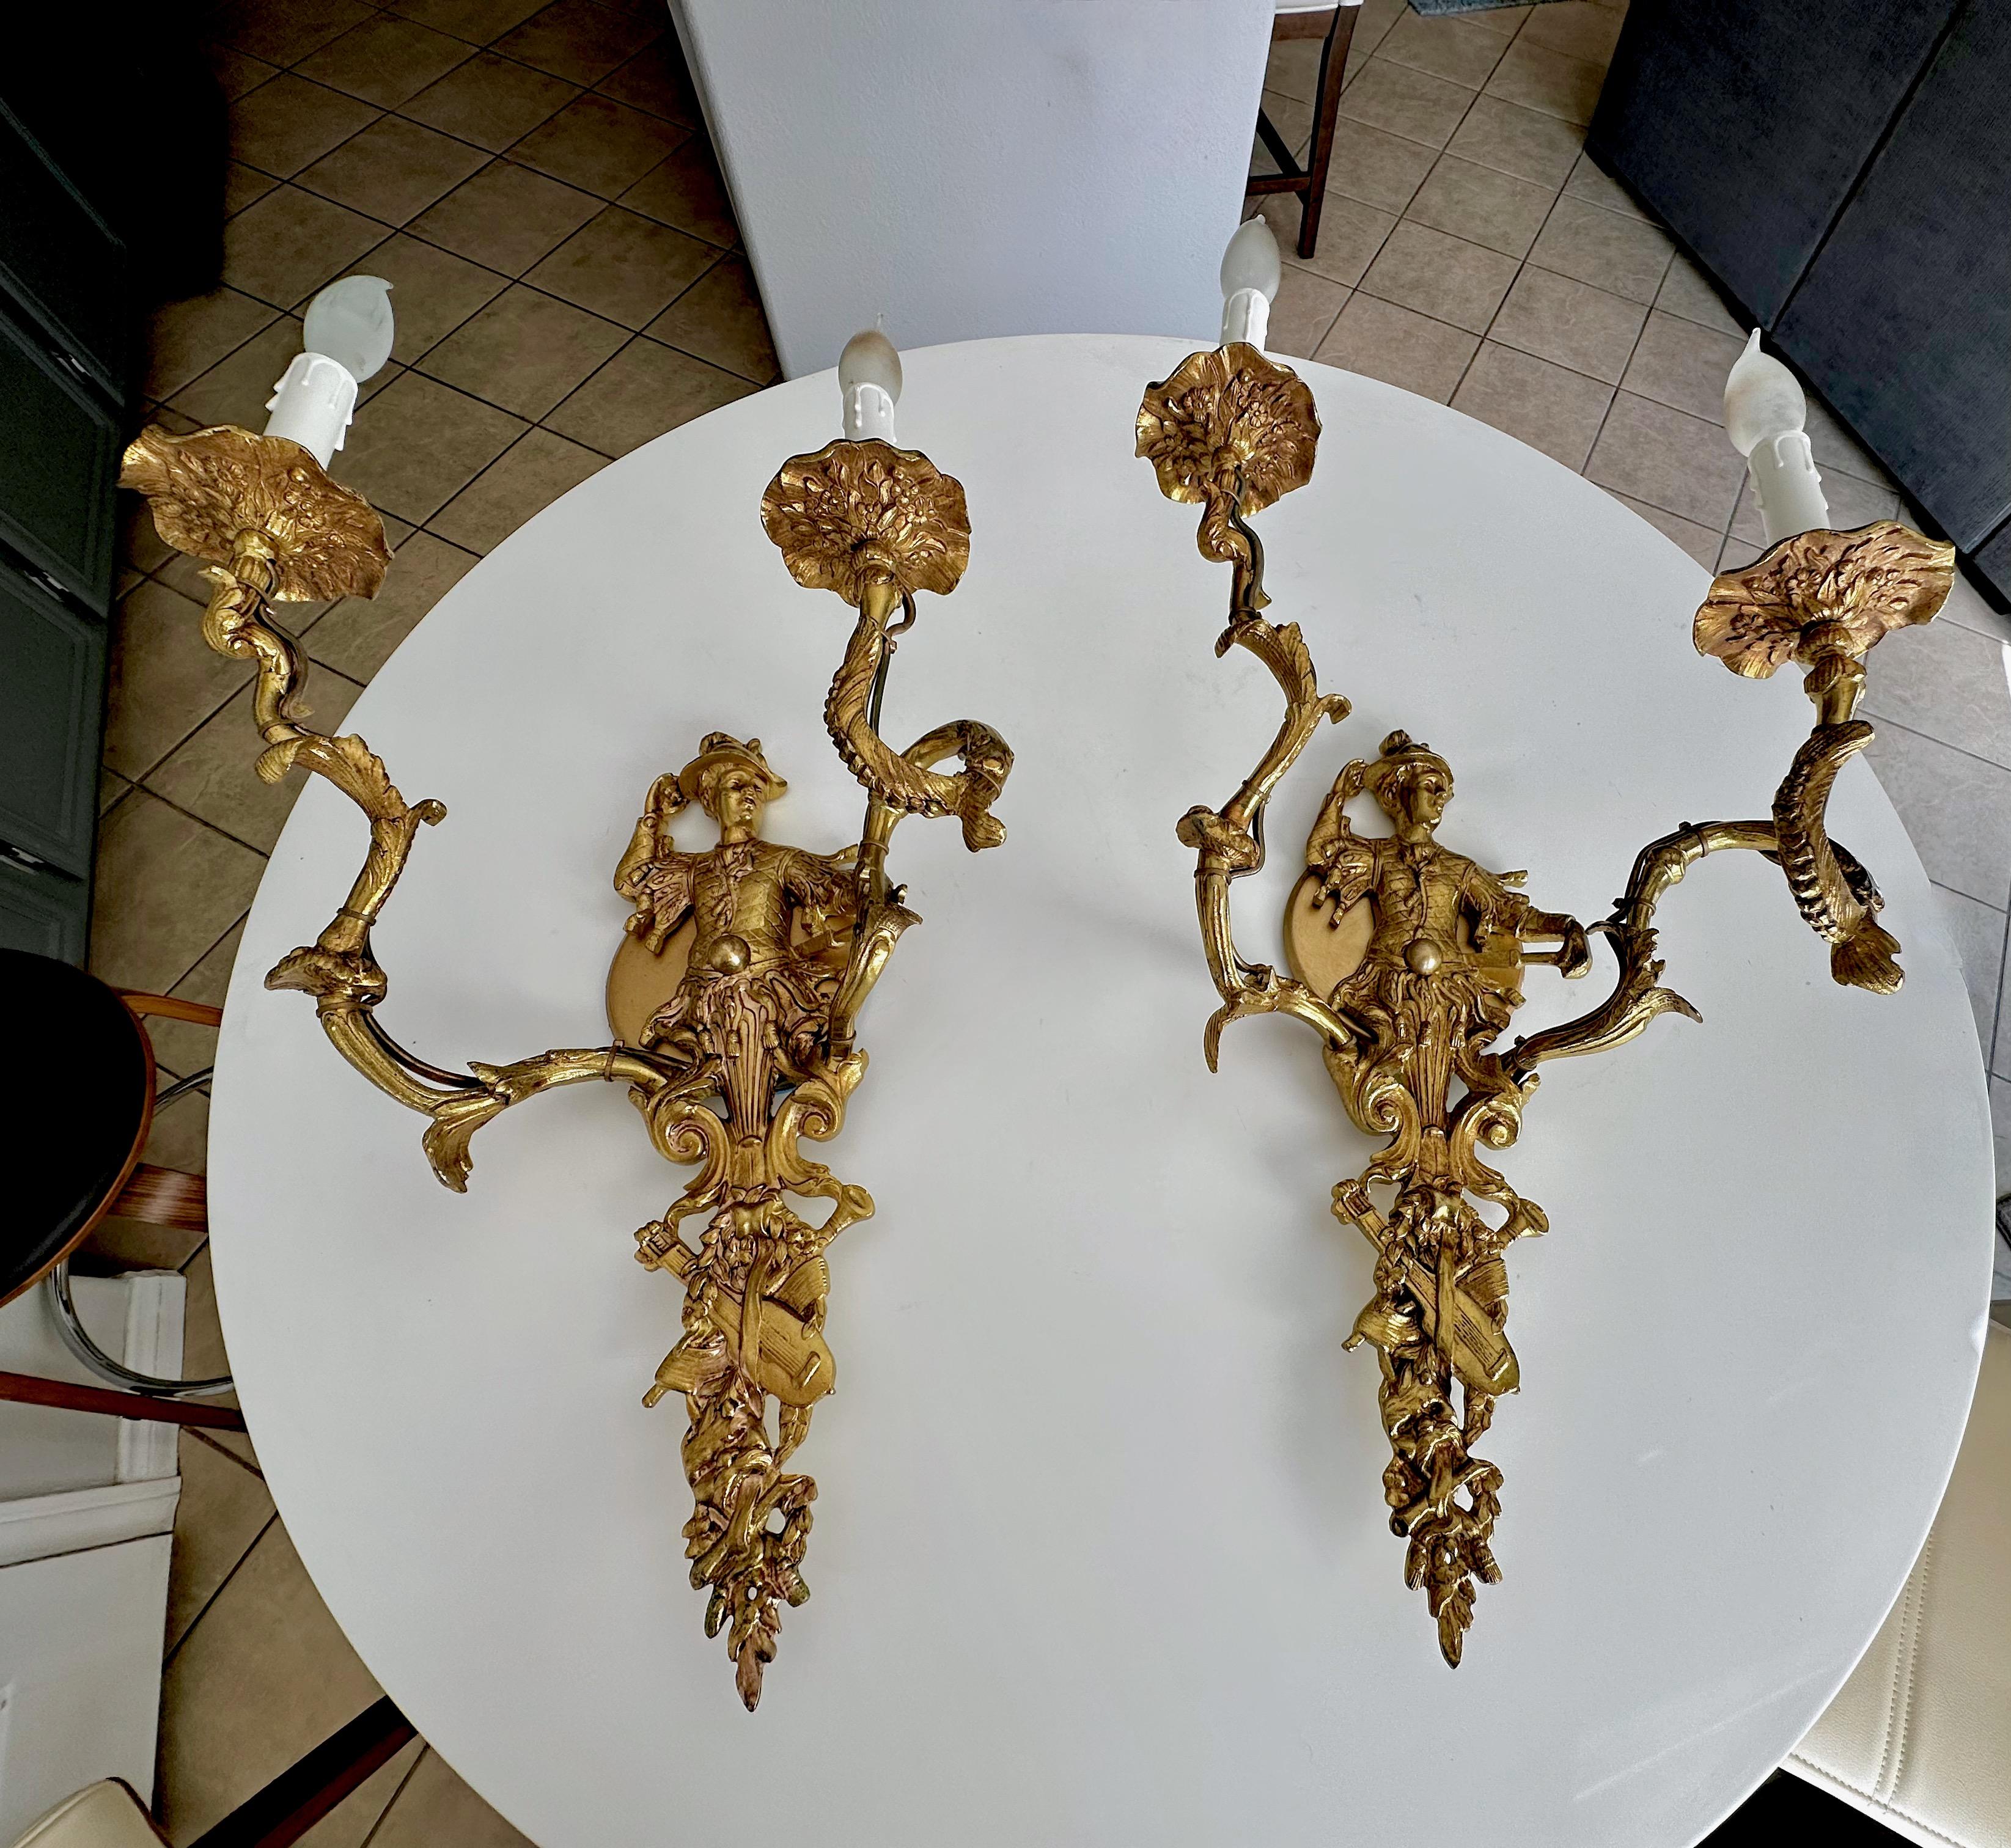 Paire de grandes appliques murales de style chinoiserie XV français en bronze doré (ou en laiton) à motif de figures masculines. Les appliques sont joliment fabriquées avec des détails fins. Chaque lampe utilise 2 ampoules de type candélabre.